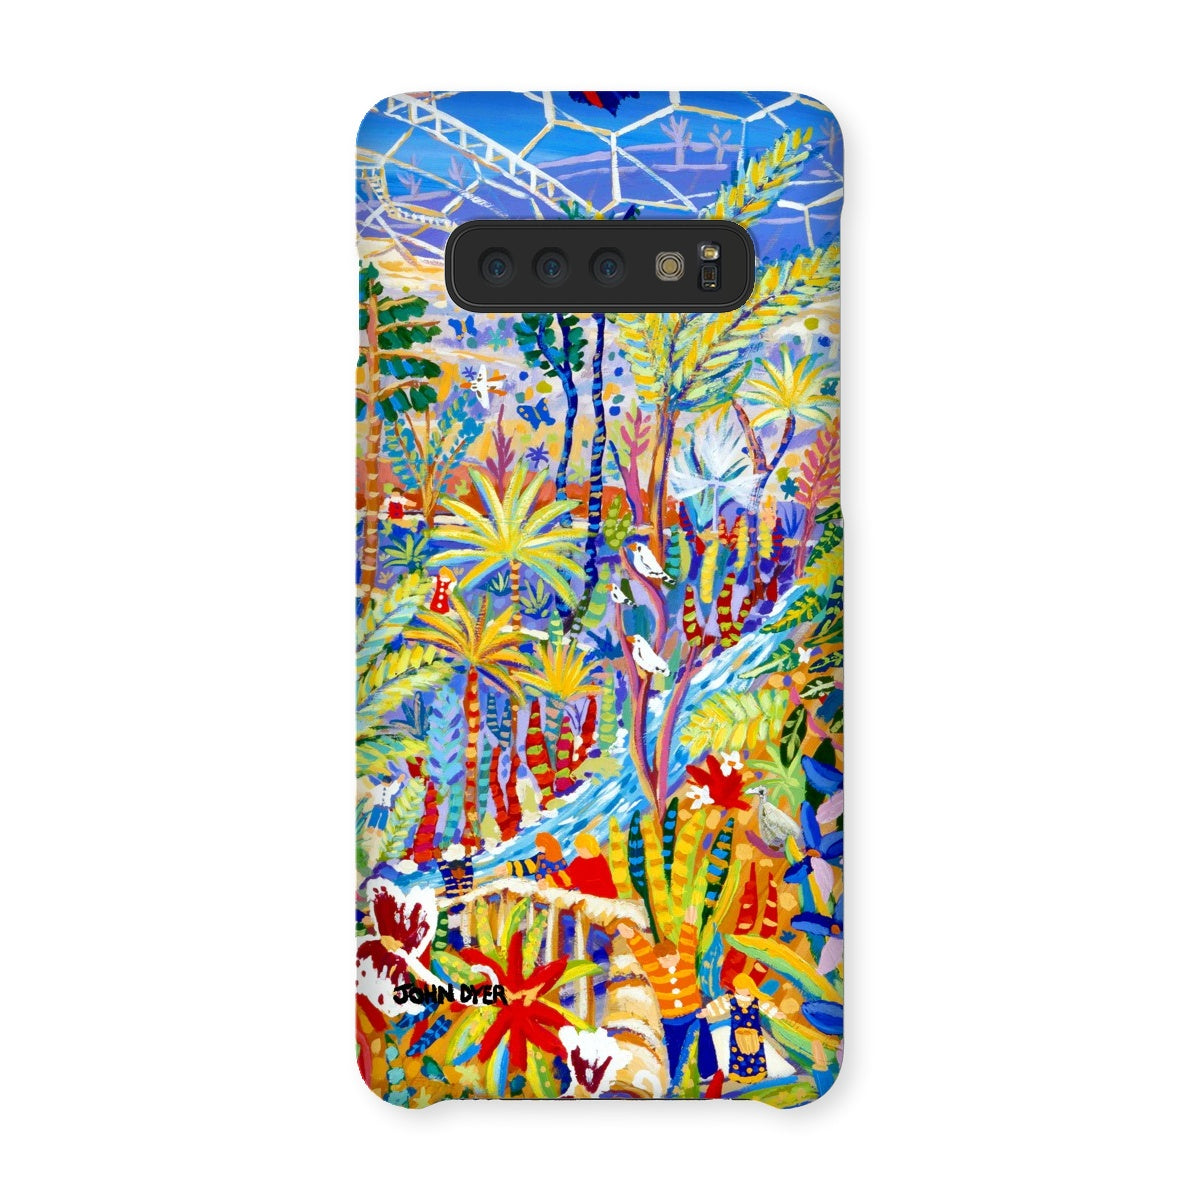 Snap Art Phone Case. Eden Project Rainforest. Artist John Dyer. Cornwall Art Gallery